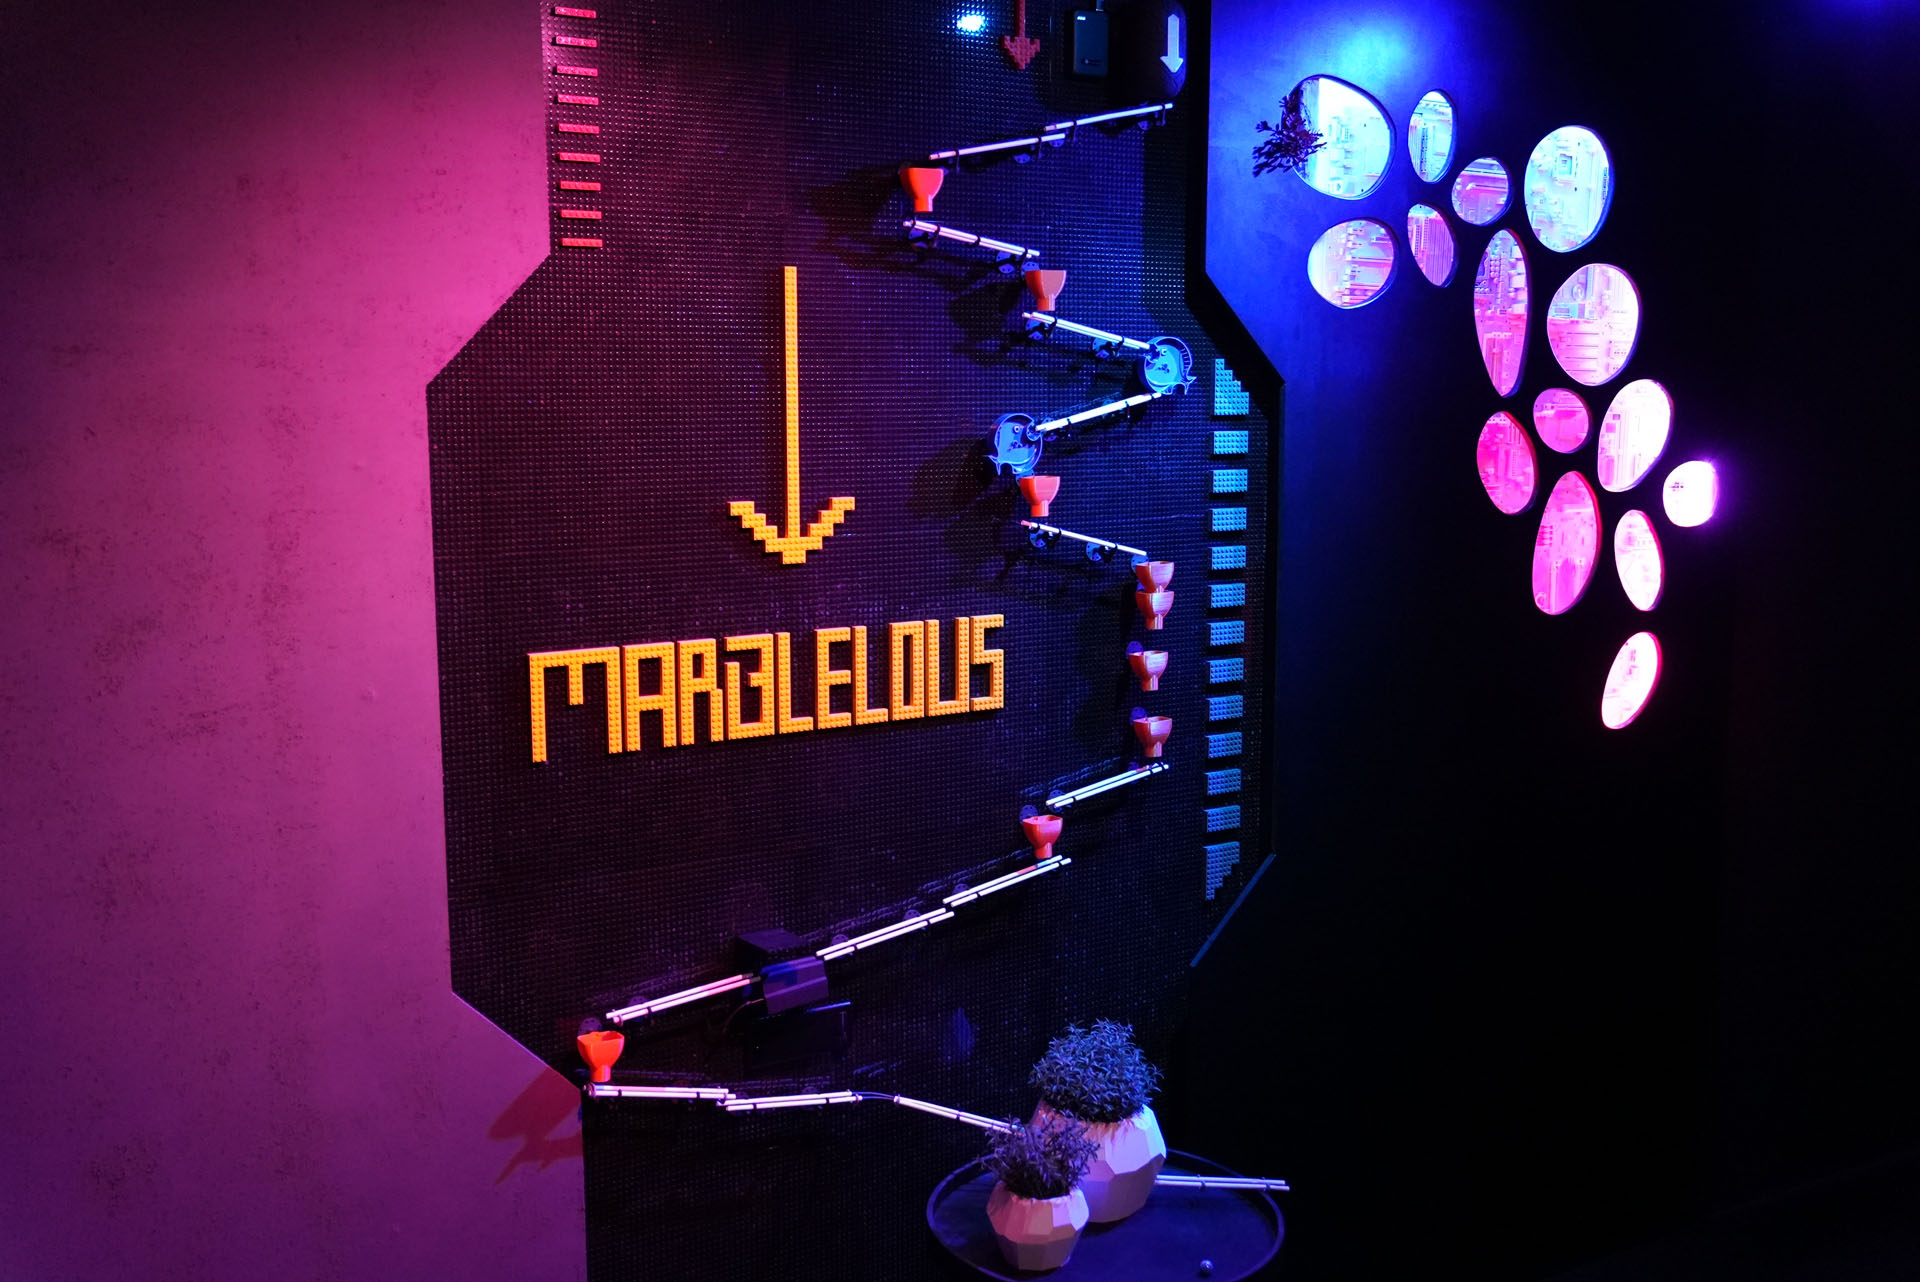 Marblelous_LEGO-wall2.jpg